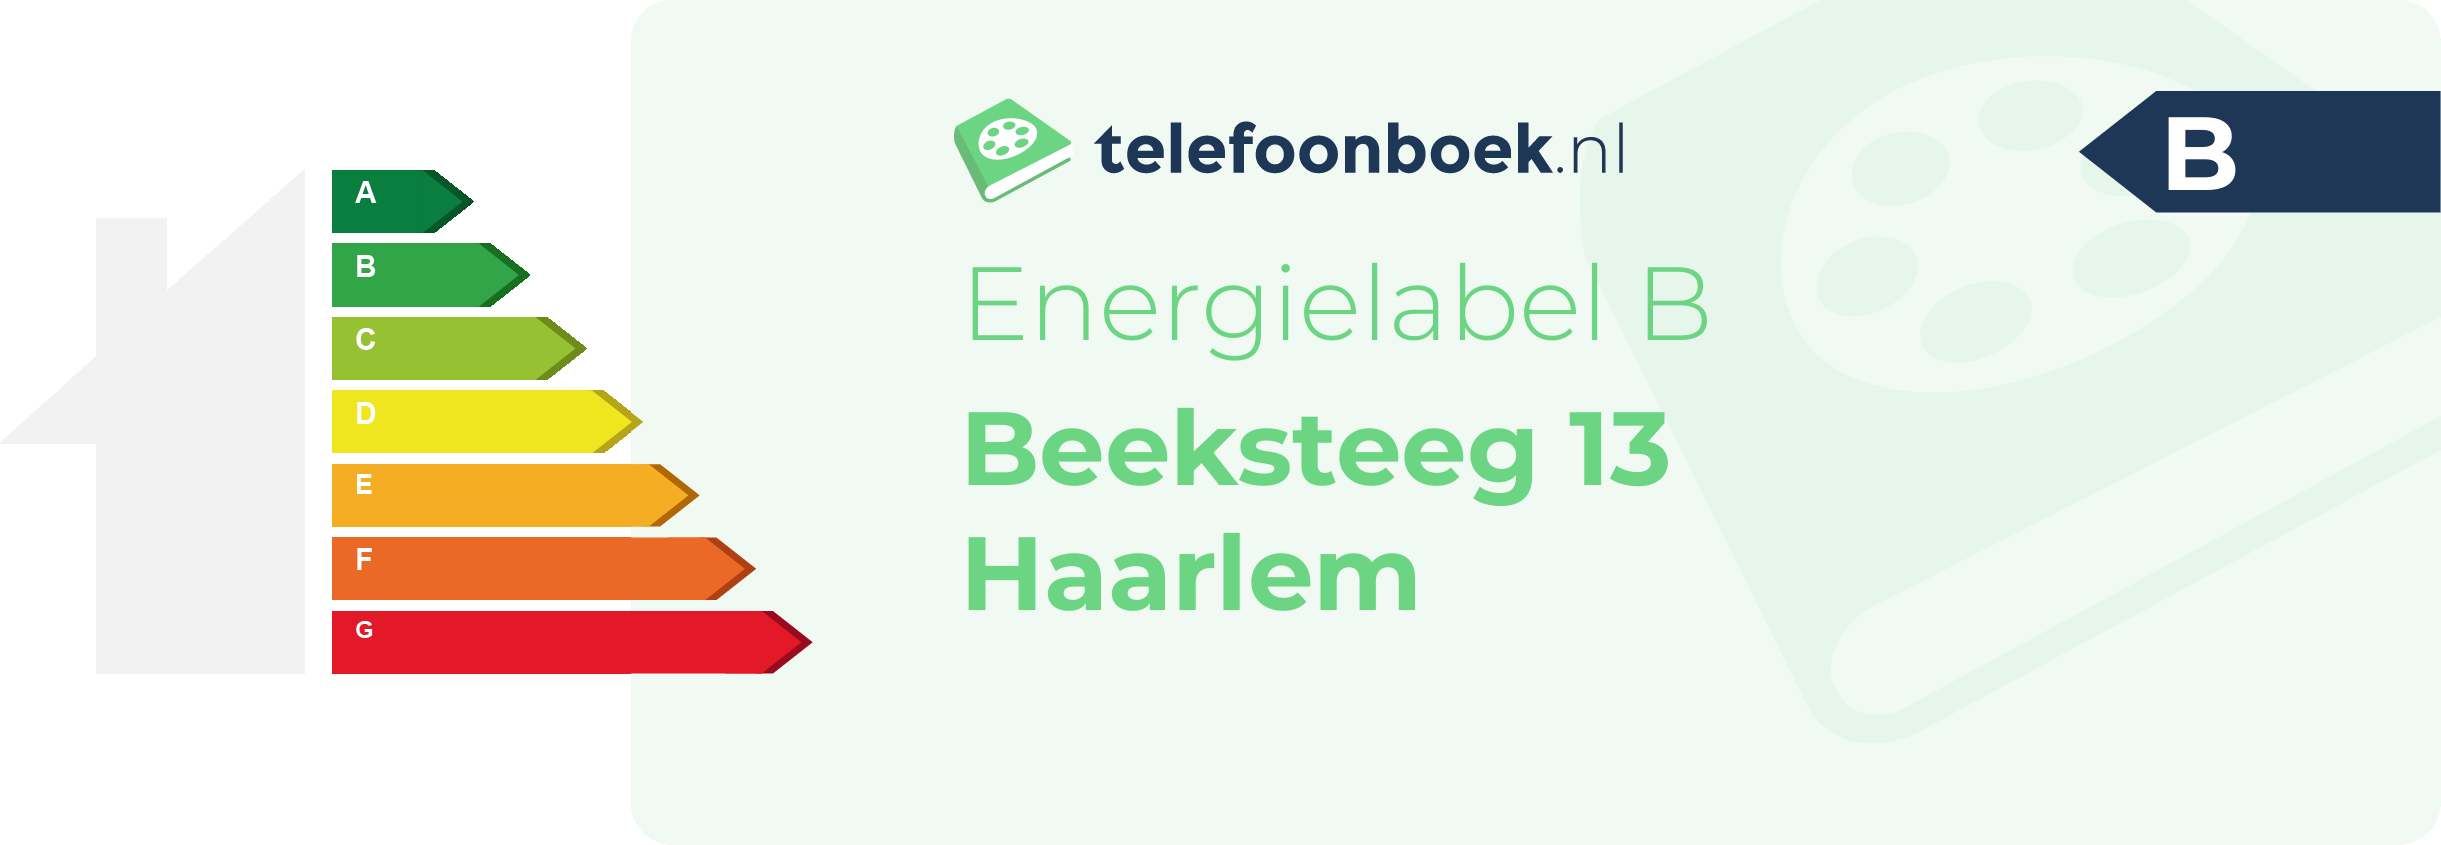 Energielabel Beeksteeg 13 Haarlem